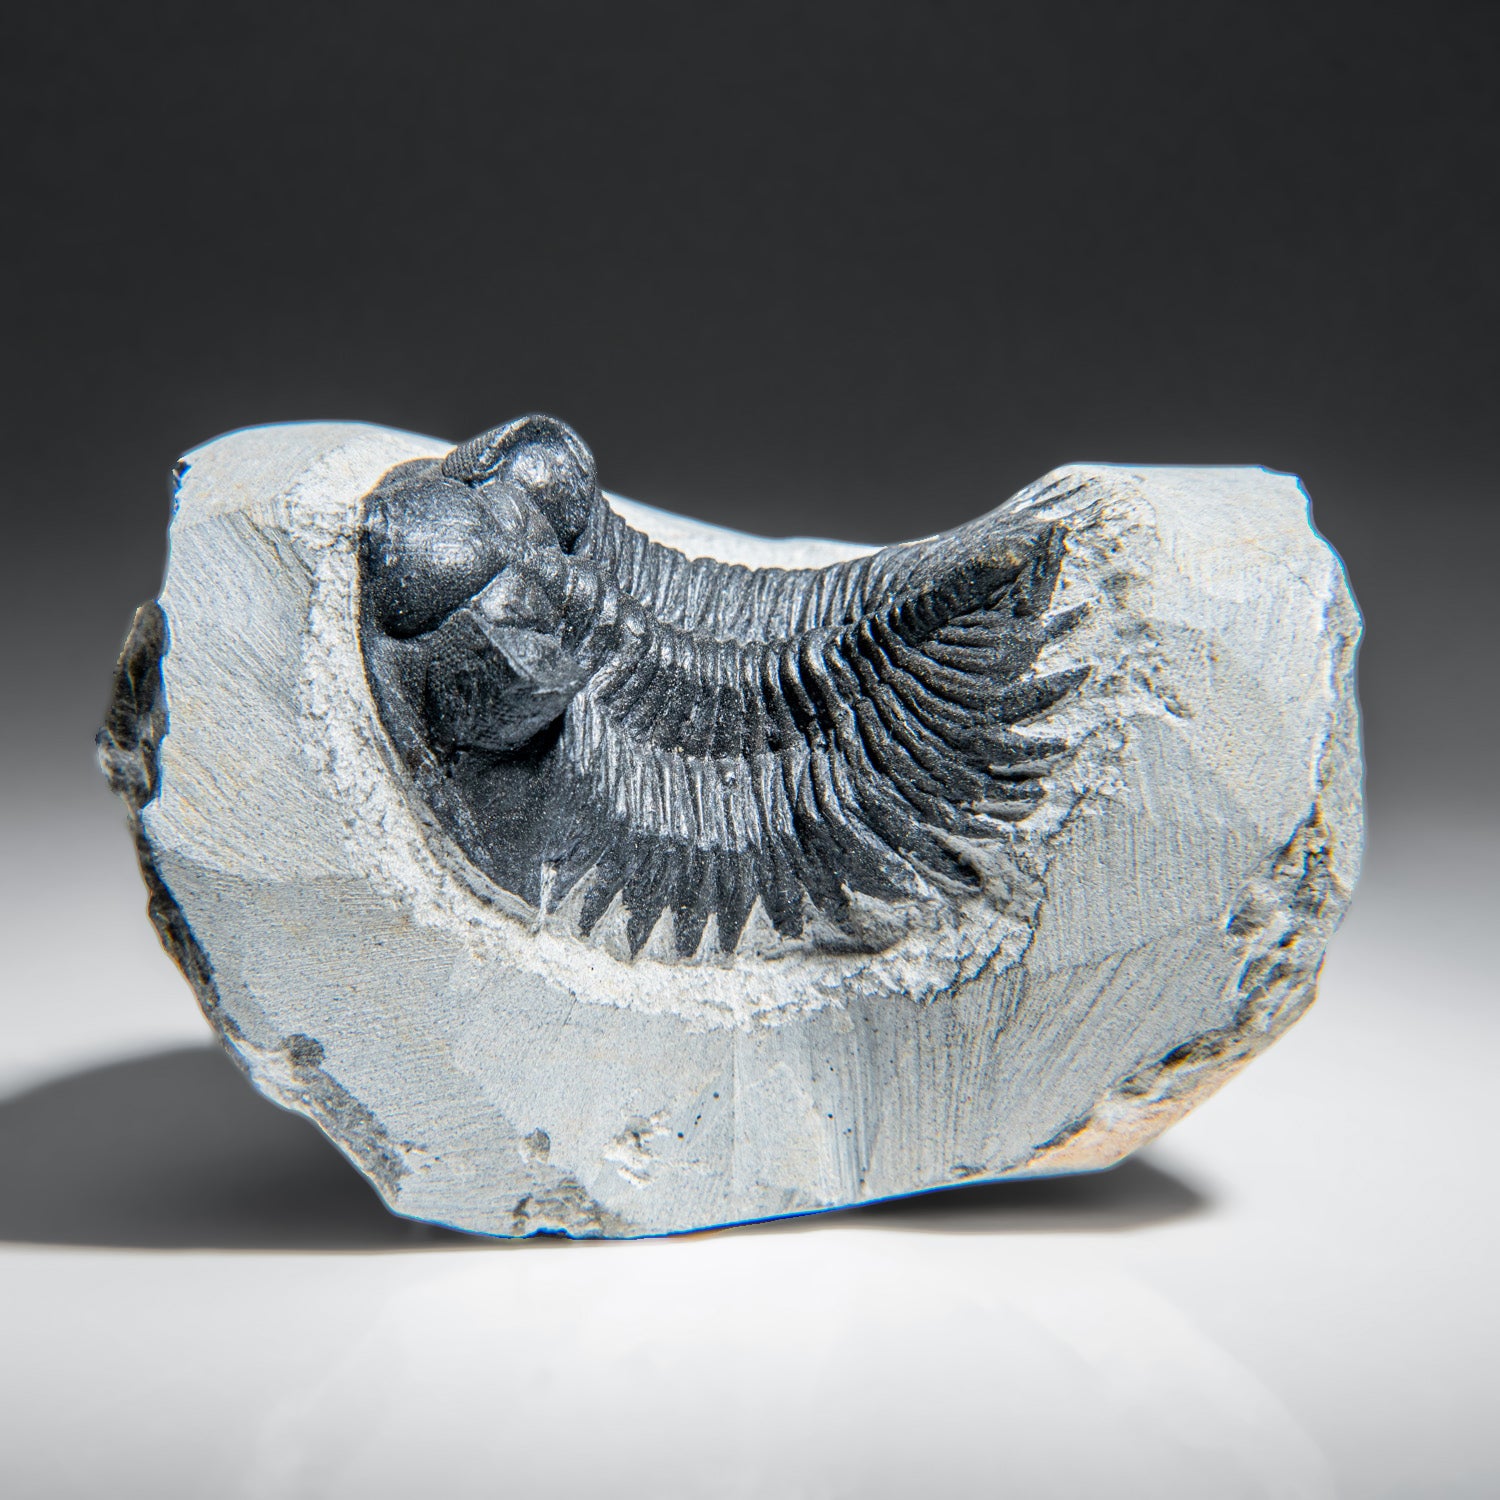 Genuine Trilobite Fossil (Ptychopariida) on Matrix (345.2 grams)